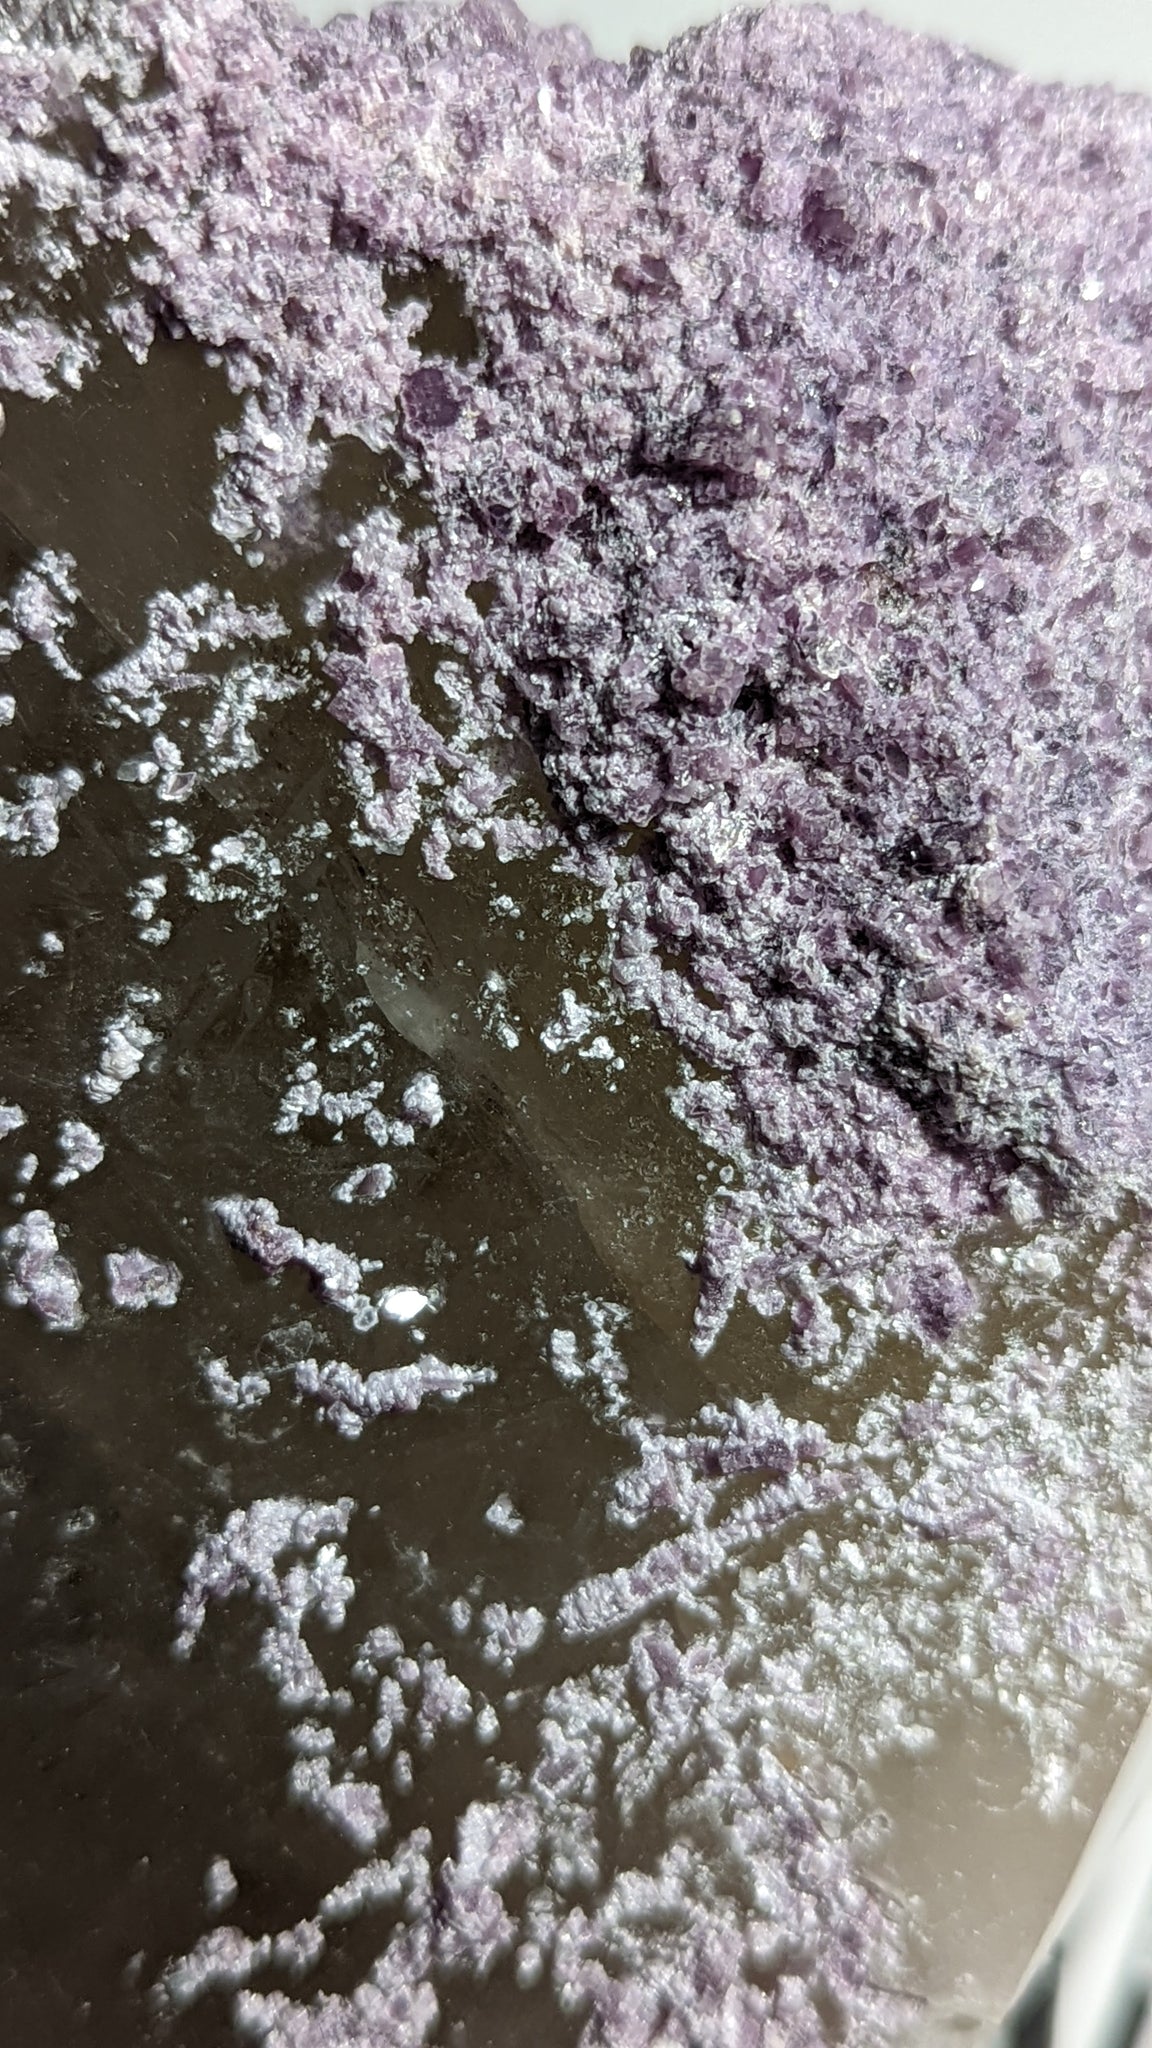 Lepidolite in Smokey Quartz